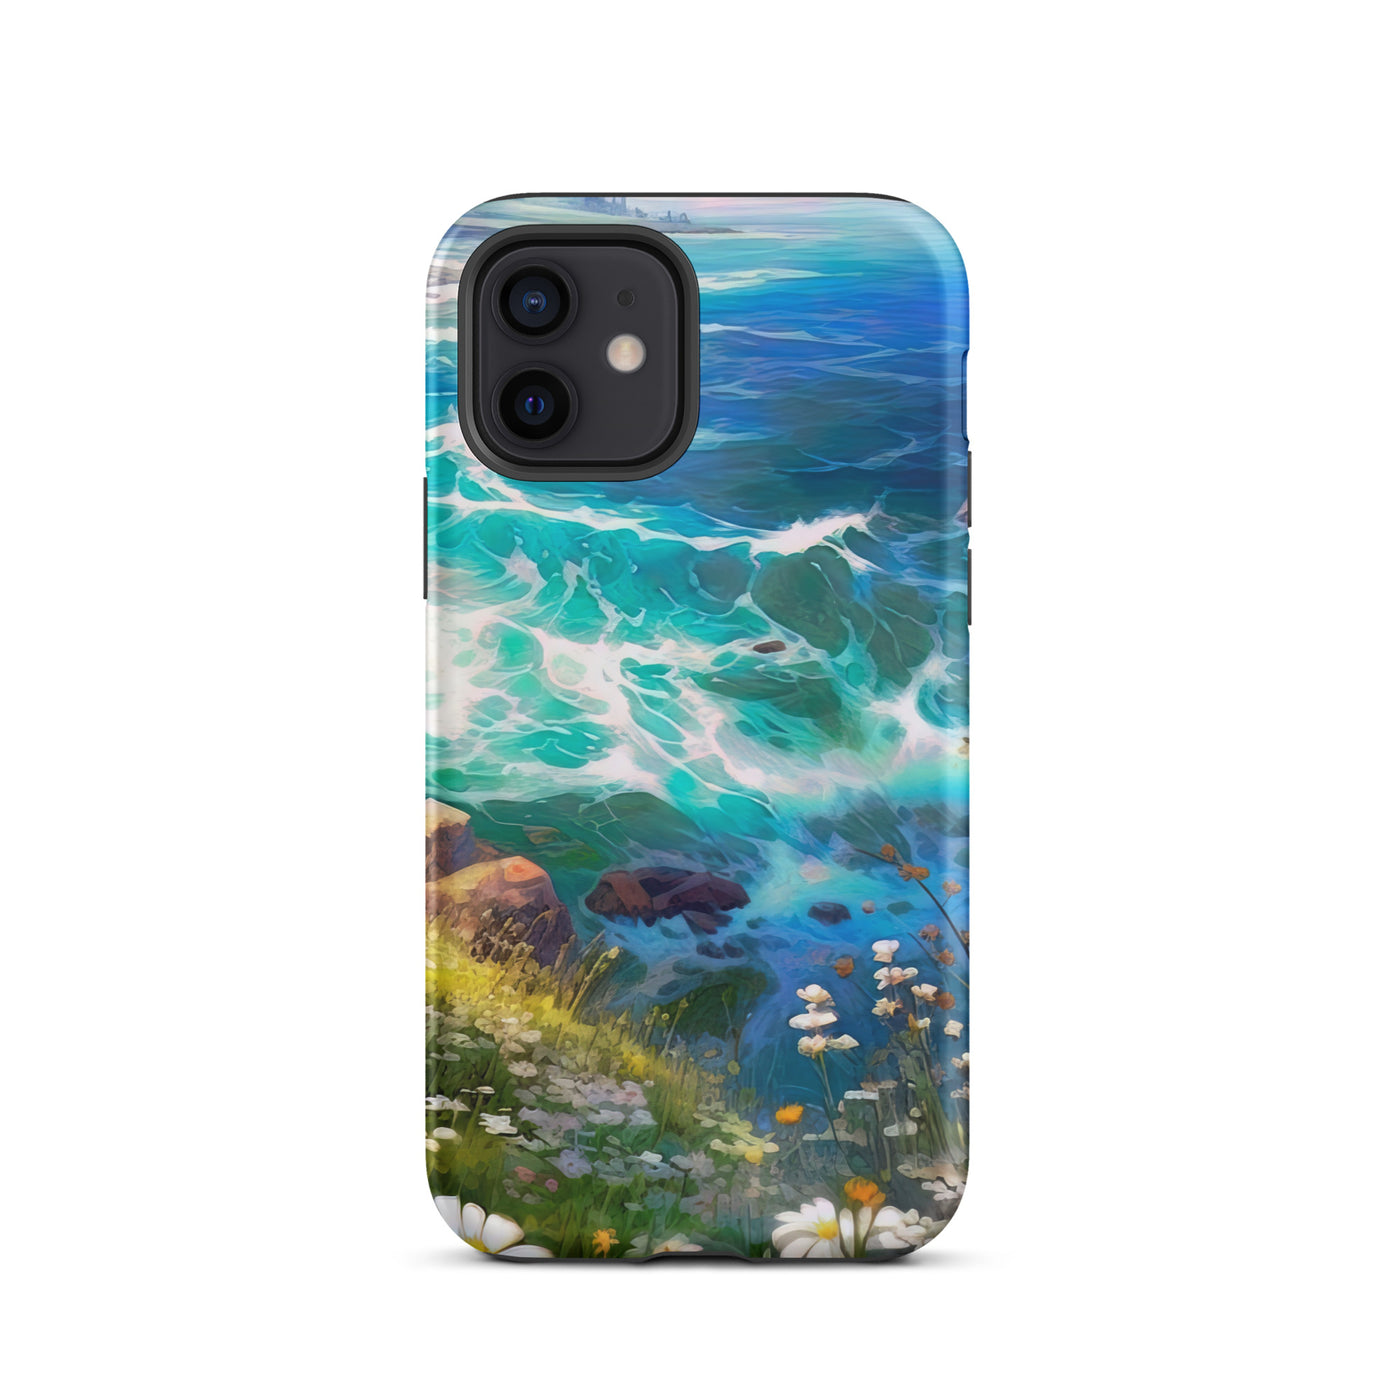 Berge, Blumen, Fluss und Steine - Malerei - iPhone Schutzhülle (robust) camping xxx iPhone 12